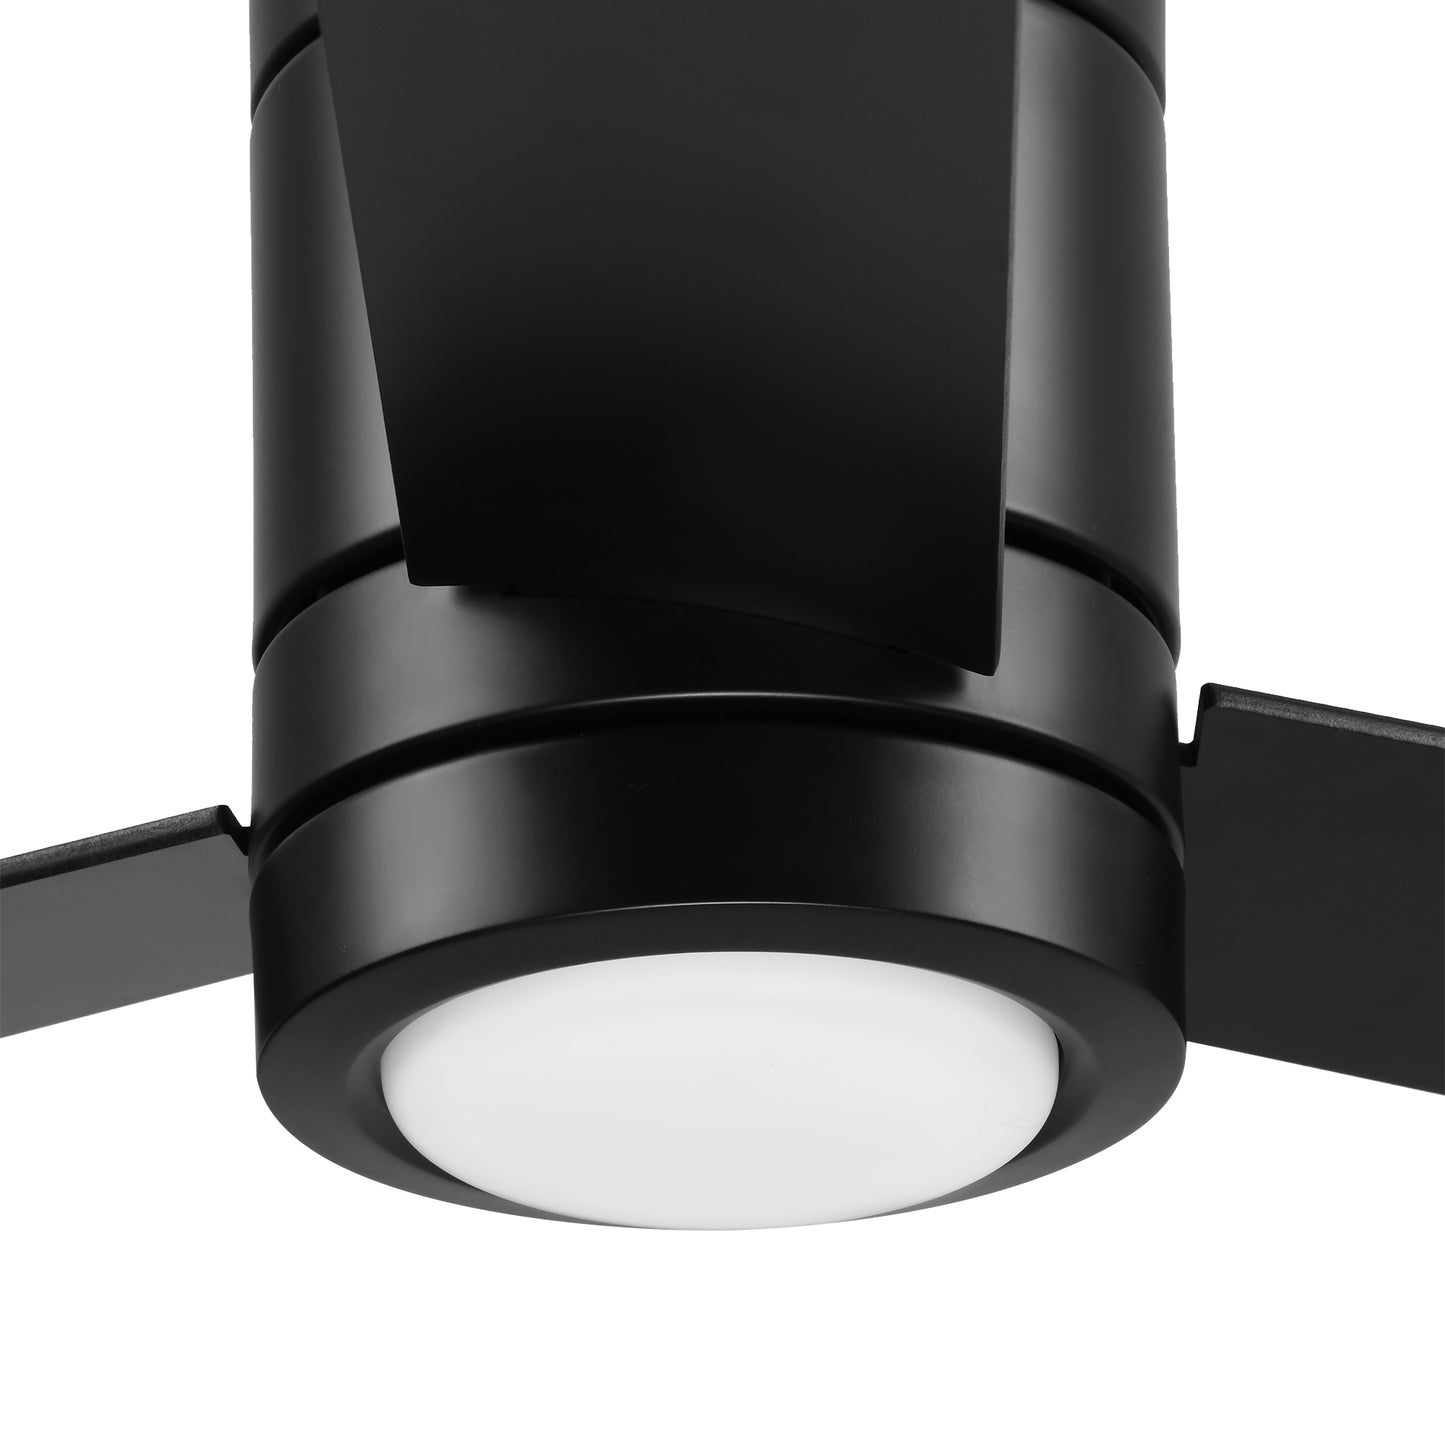 HOMCOM Ventilador de Techo con Luz LED Motor AC 48W Mando a Distancia 112 de Diámetro 3 Velocidades Temporizador 3 Aspas de Madera Silencioso para Dormitorio Salón Comedor Negro